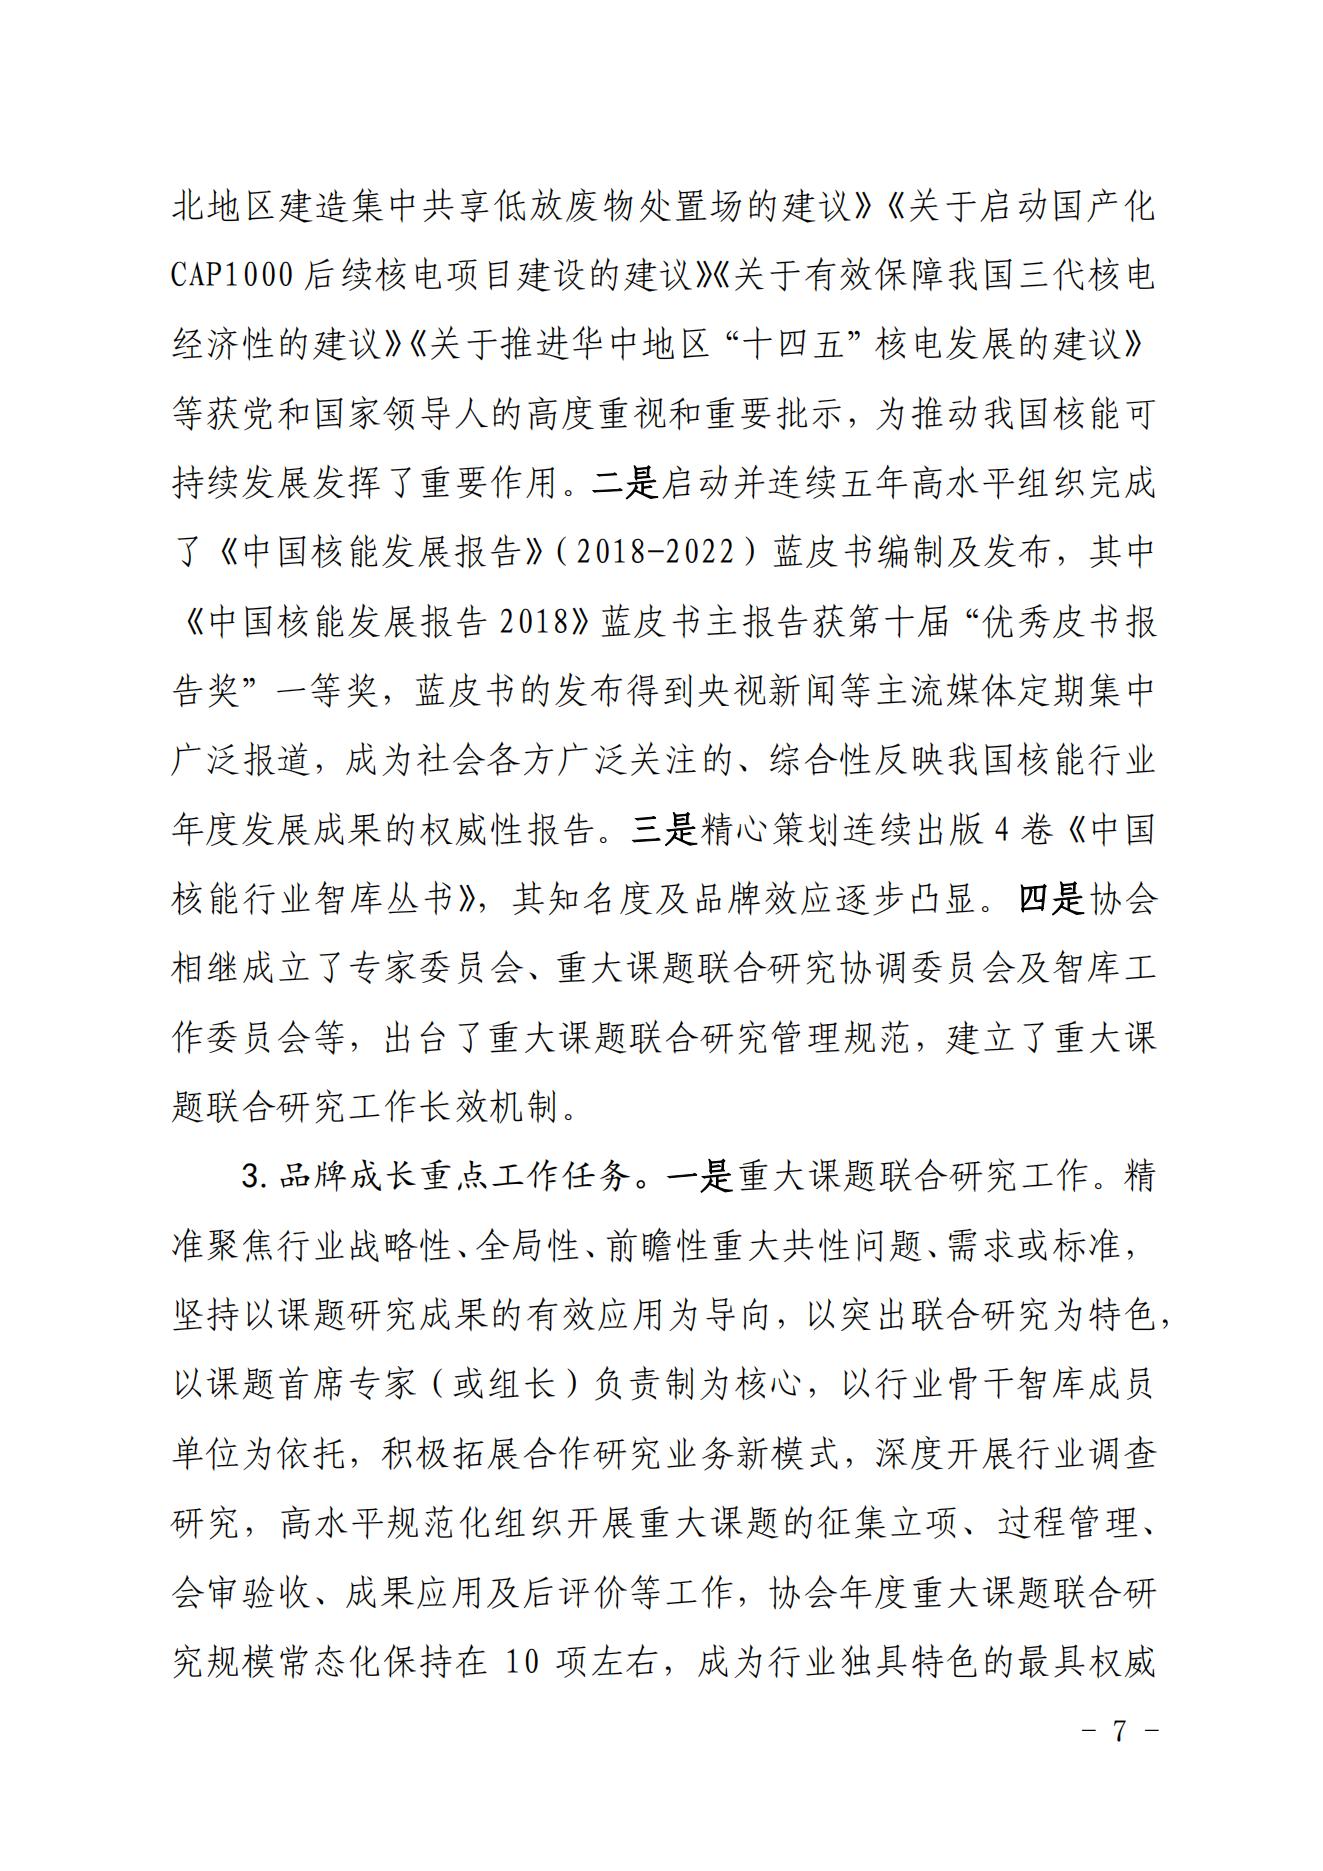 关于印发《中国核能行业协会“品牌协会成长计划”实施方案》的通知_06.jpg